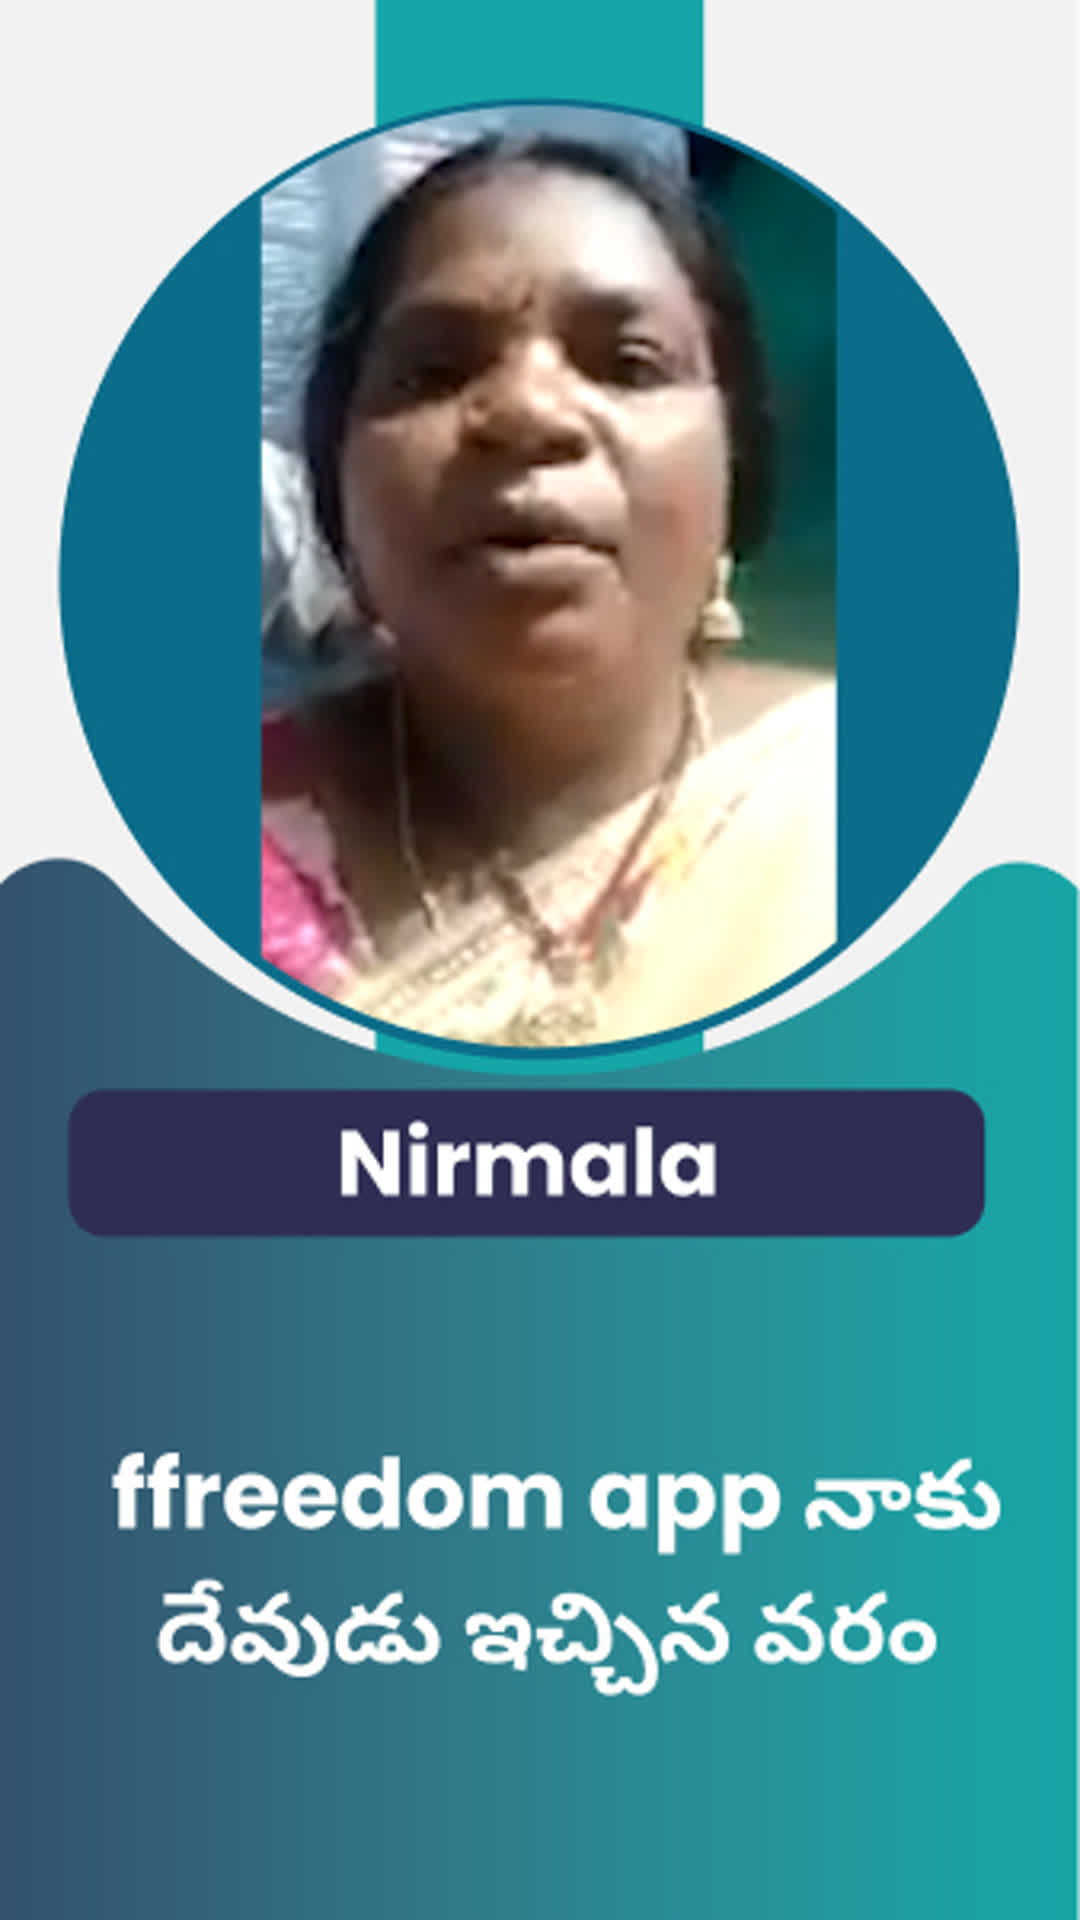 D vijaya NIRMALA's Honest Review of ffreedom app - Khammam ,Telangana